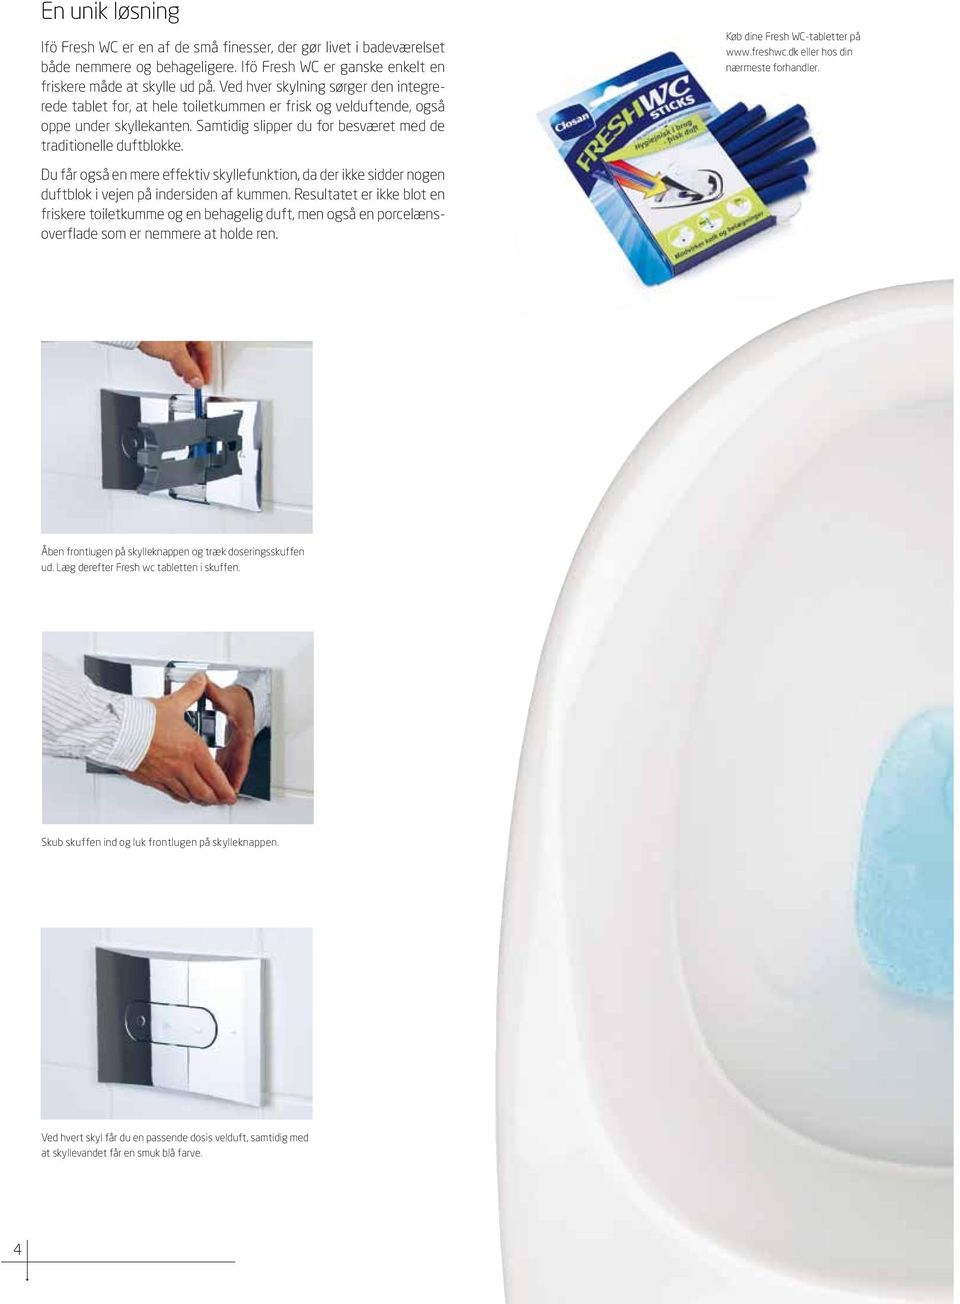 Køb dine Fresh WC-tabletter på www.freshwc.dk eller hos din nærmeste forhandler. Du får også en mere effektiv skyllefunktion, da der ikke sidder nogen duftblok i vejen på indersiden af kummen.